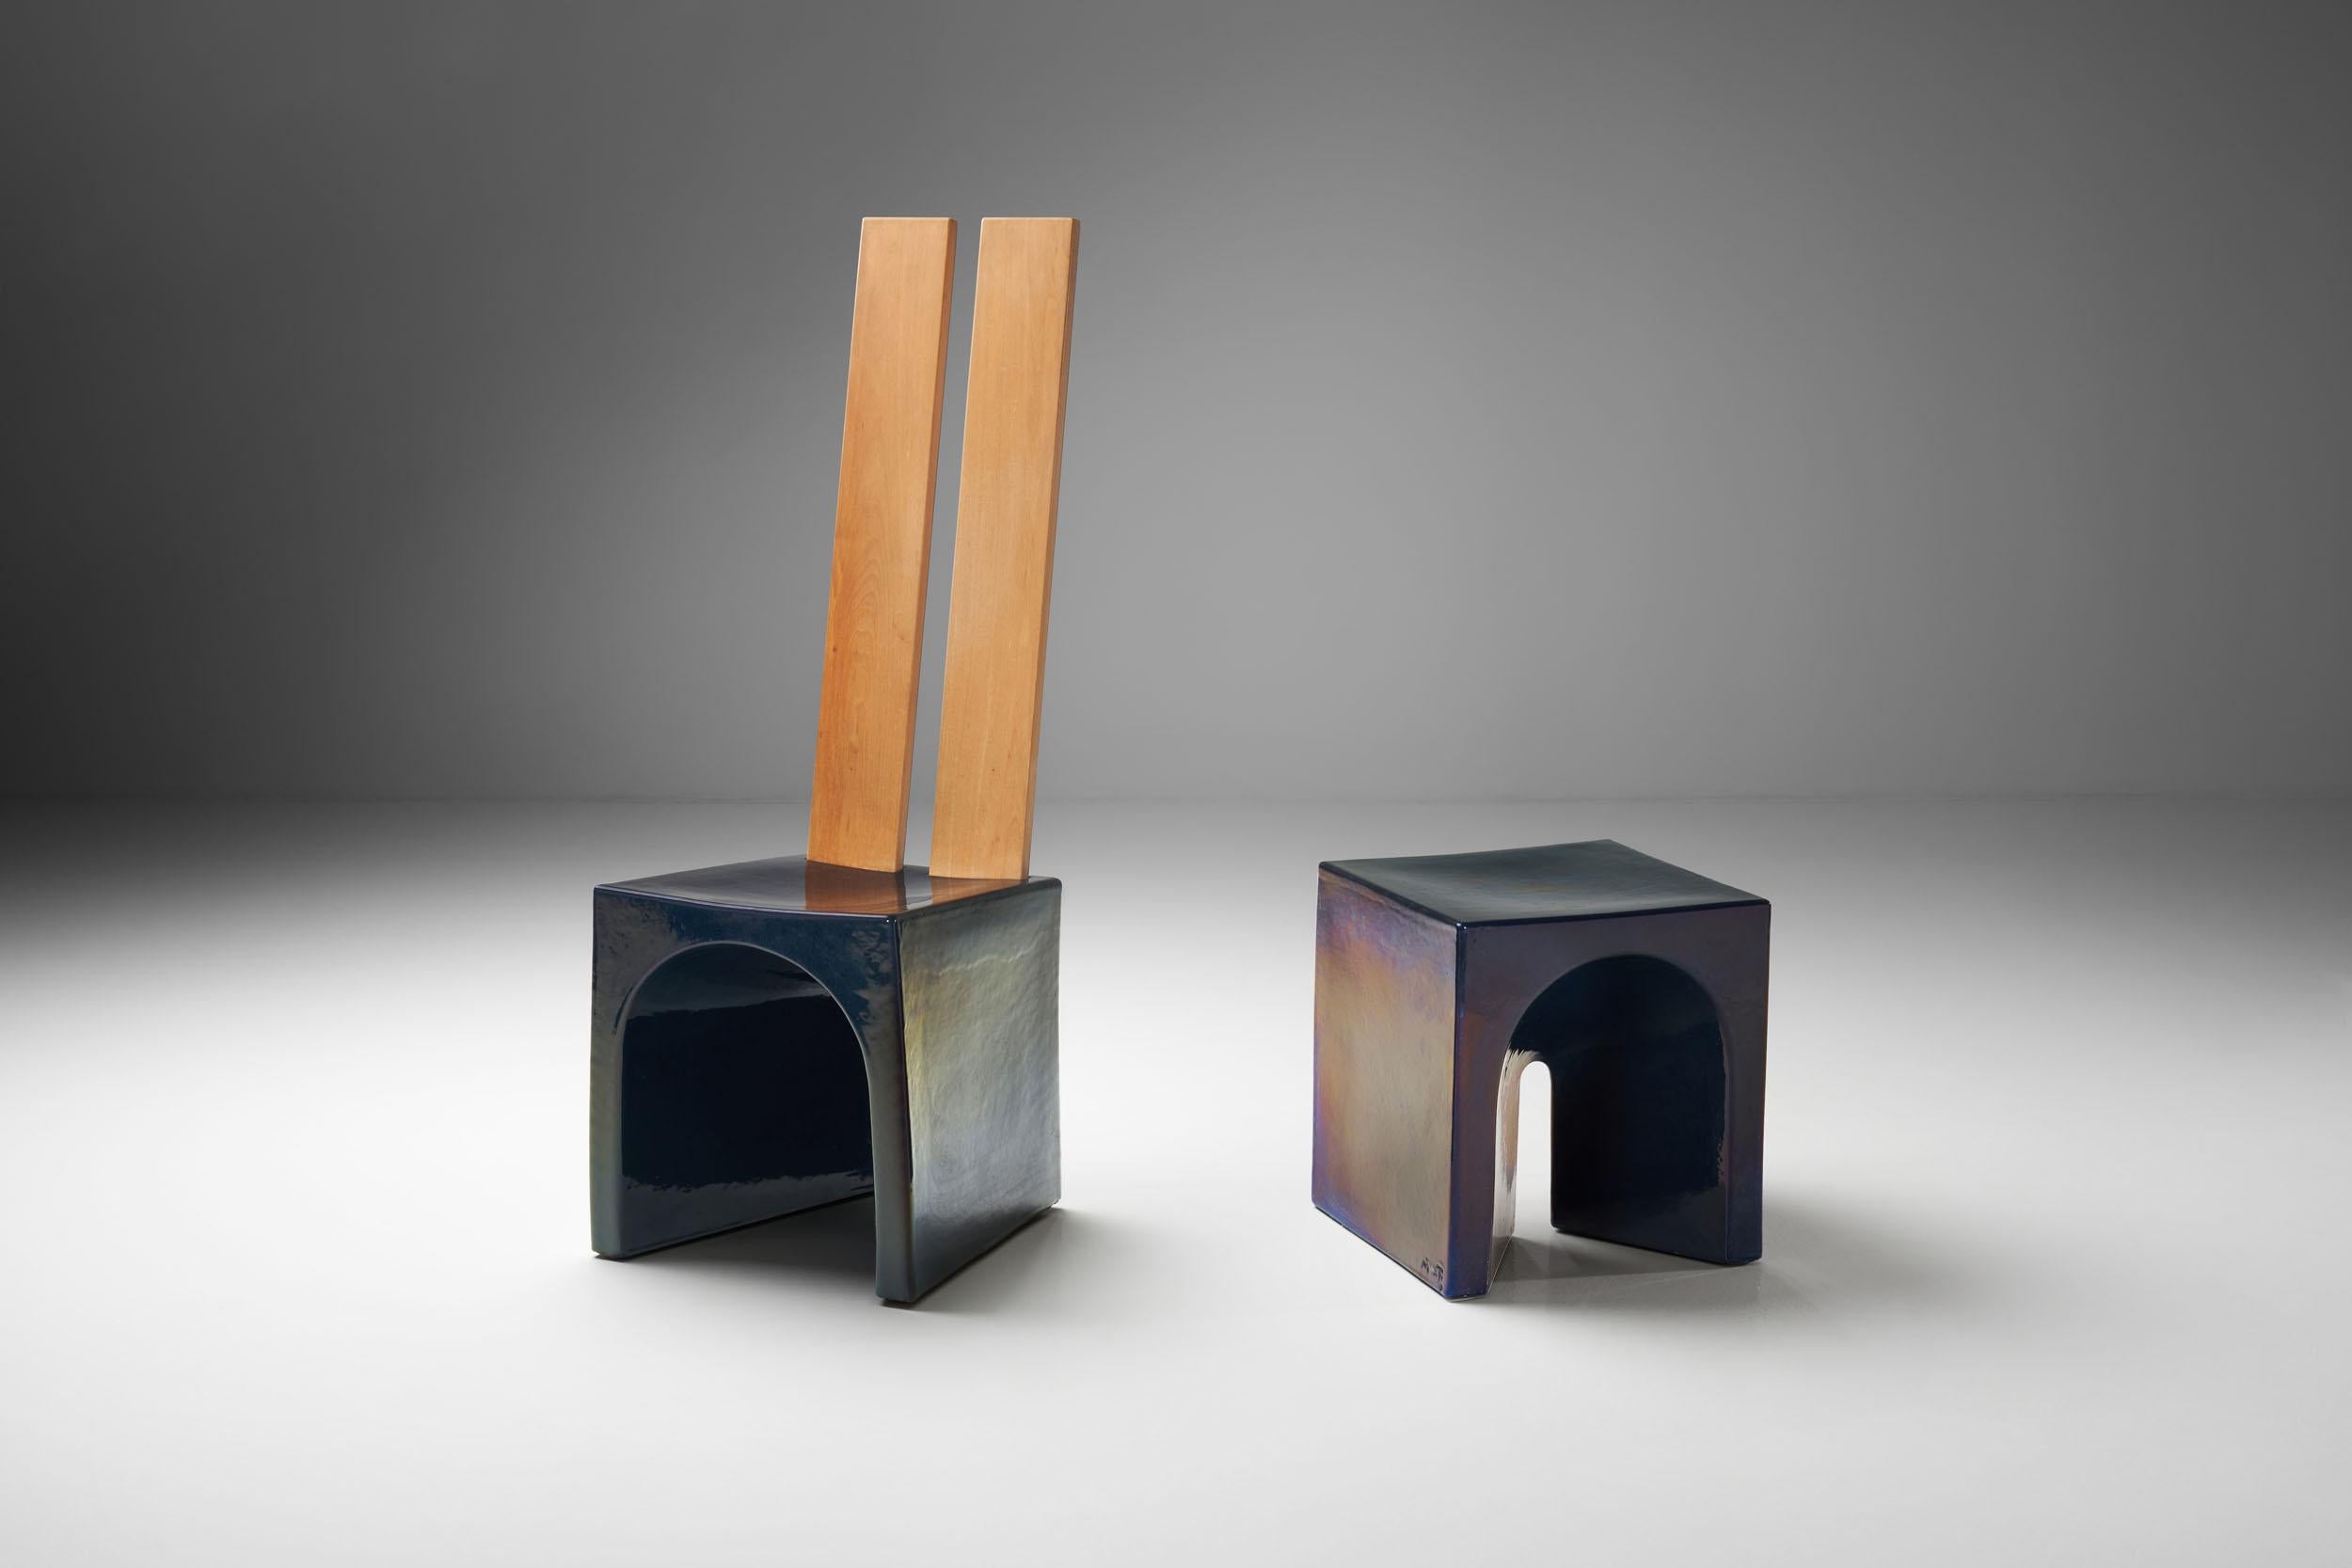 Dieser elementare Stuhl und Tisch sind ein schönes Beispiel für die Collaboration zwischen dem niederländischen Designer Tom Bruinsma und Mobach Keramik. Diese vollständig glasierten Keramikstücke erscheinen je nach Blickwinkel und Lichteinfall in